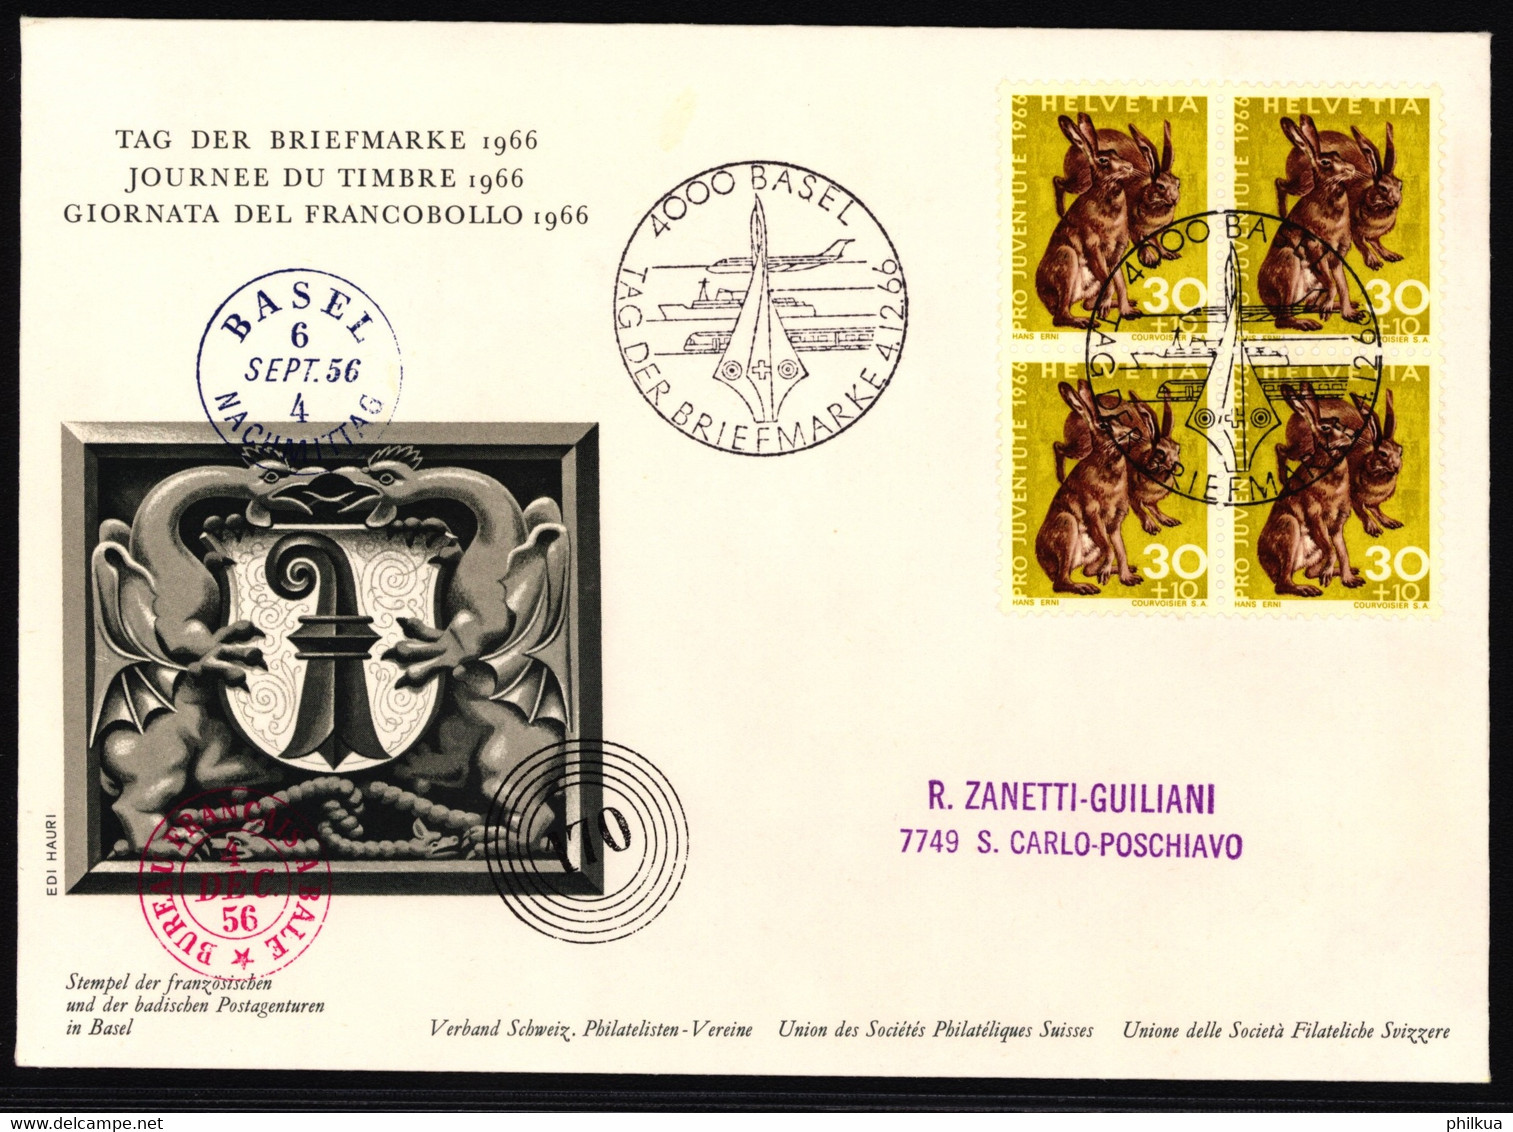 J218 Feldhase Auf Ofiziellem Sonderumschalg "Tag Der Briefmarke" Mit Stempel Tag Der Briefmarke 1966 - BASEL - Giornata Del Francobollo